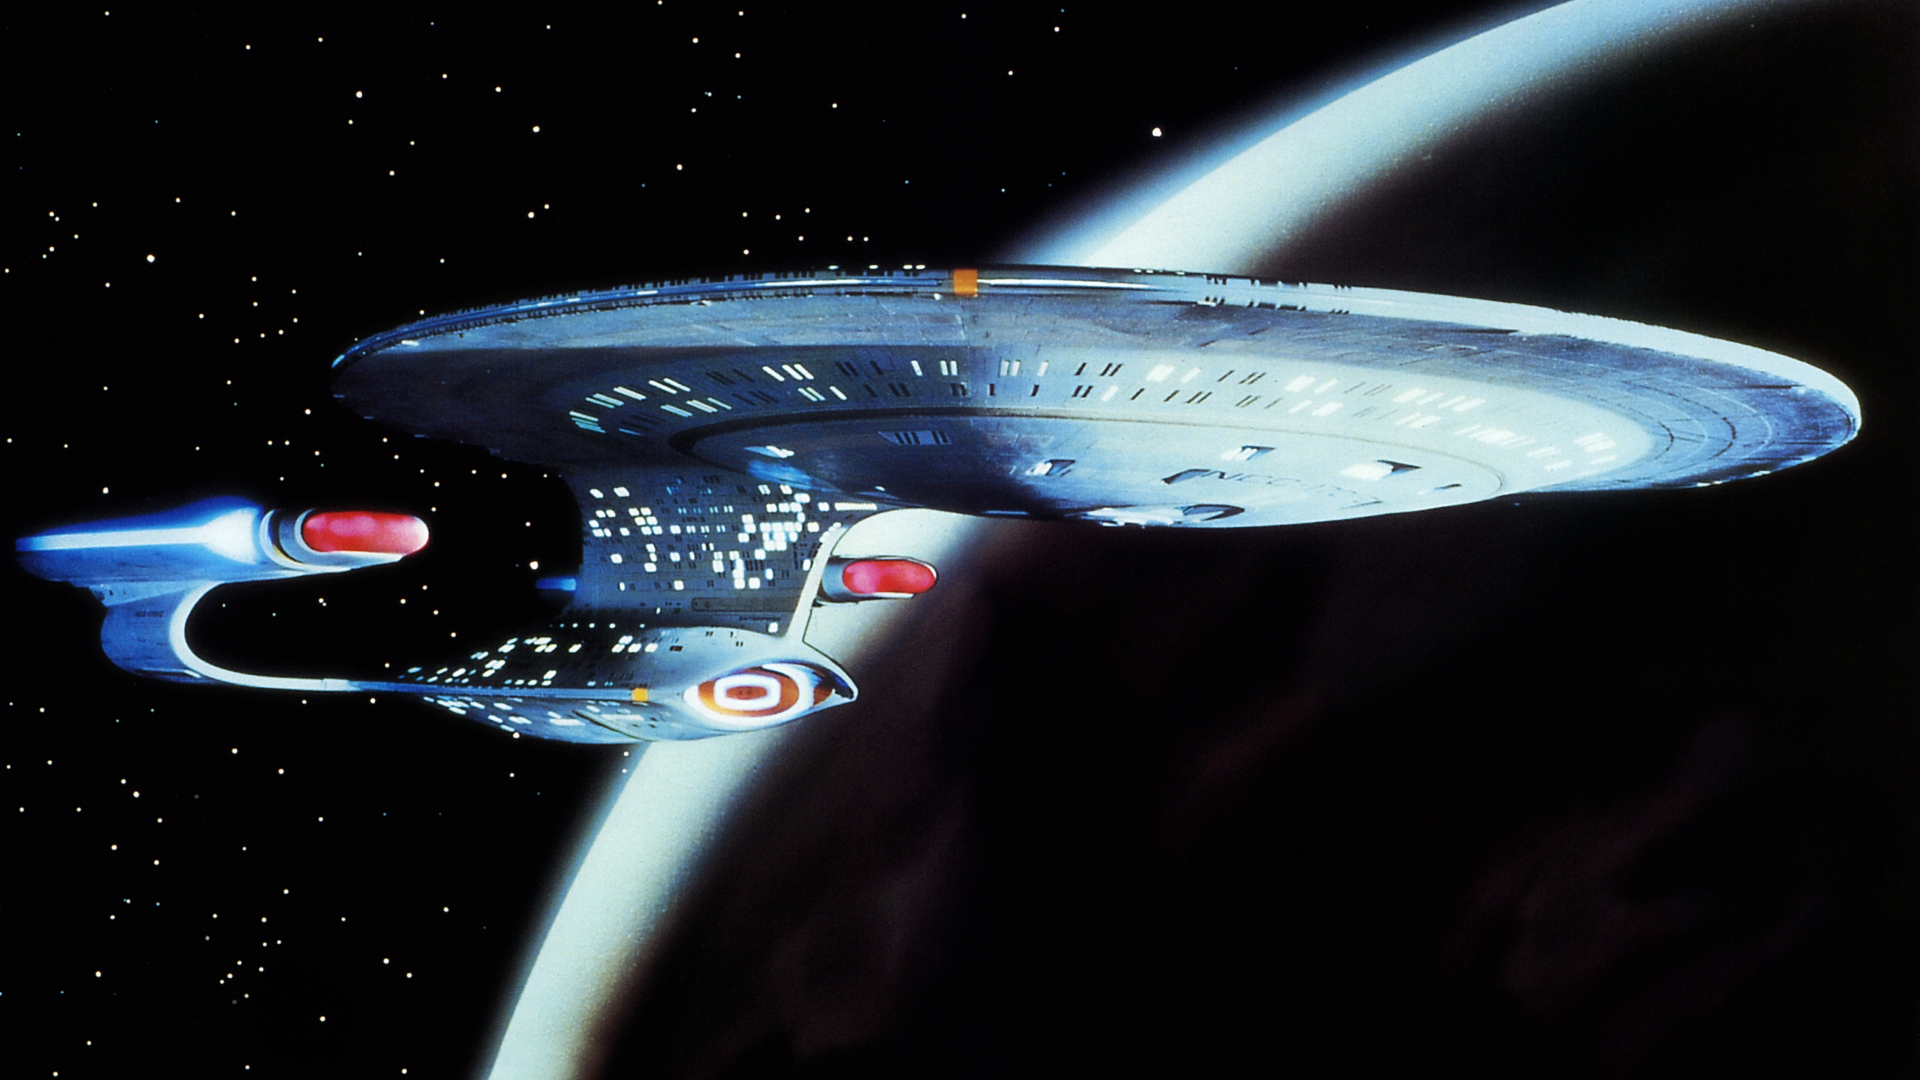 Star Trek Wallpaper 1080p Imagebank Biz